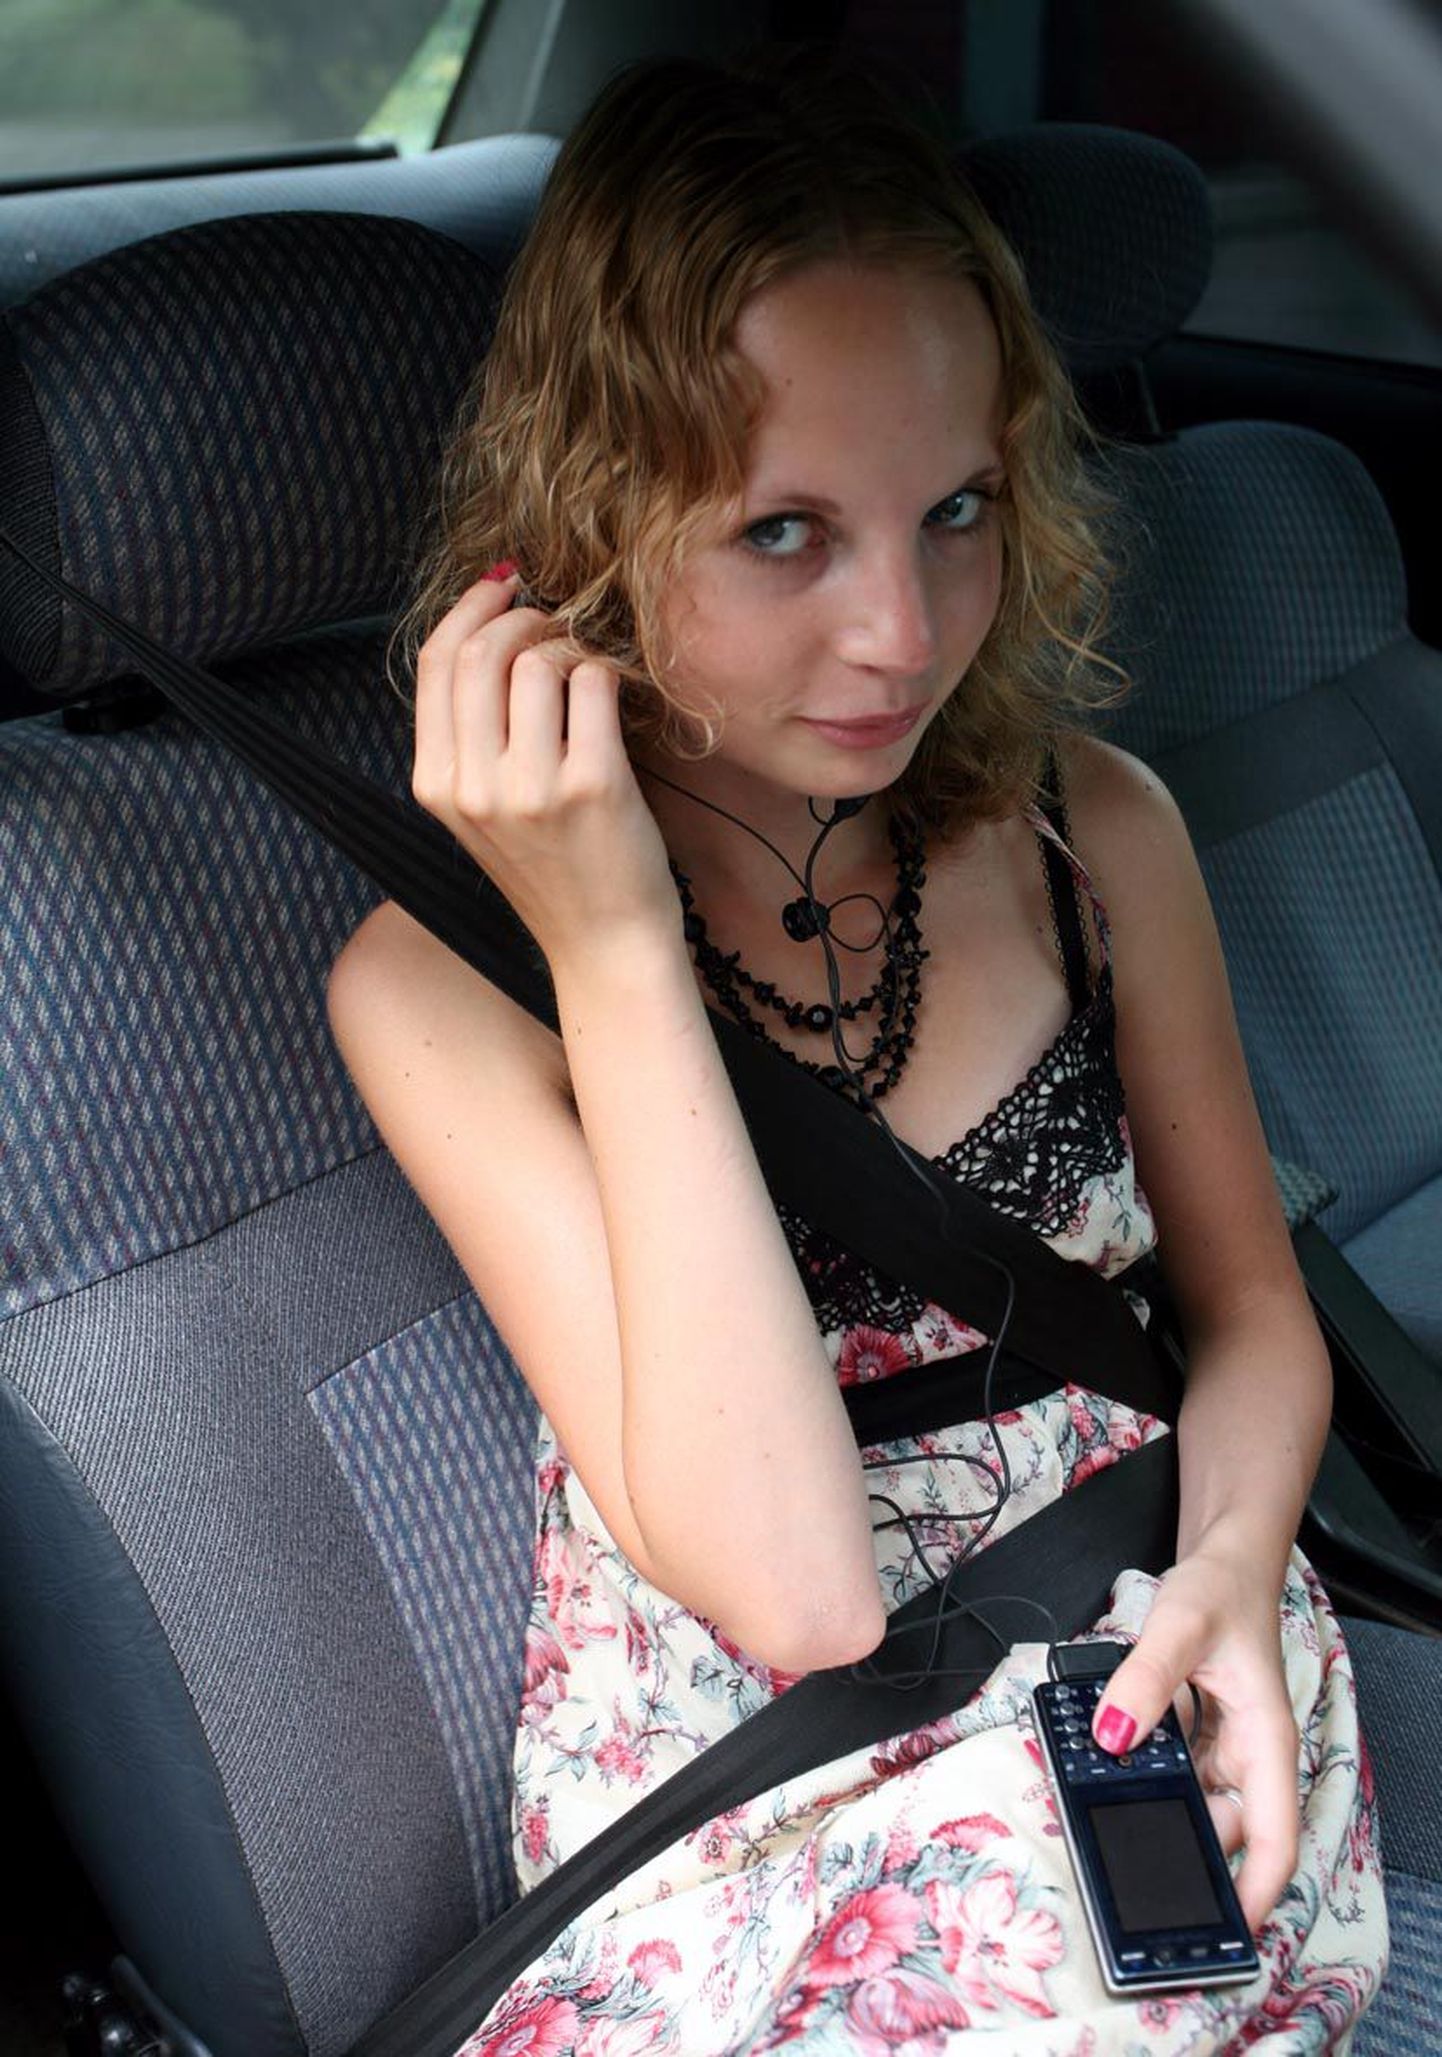 Pikalevenivaid autosõite saab huvitavamaks muuta klappidega telefonist audioraamatut kuulates.